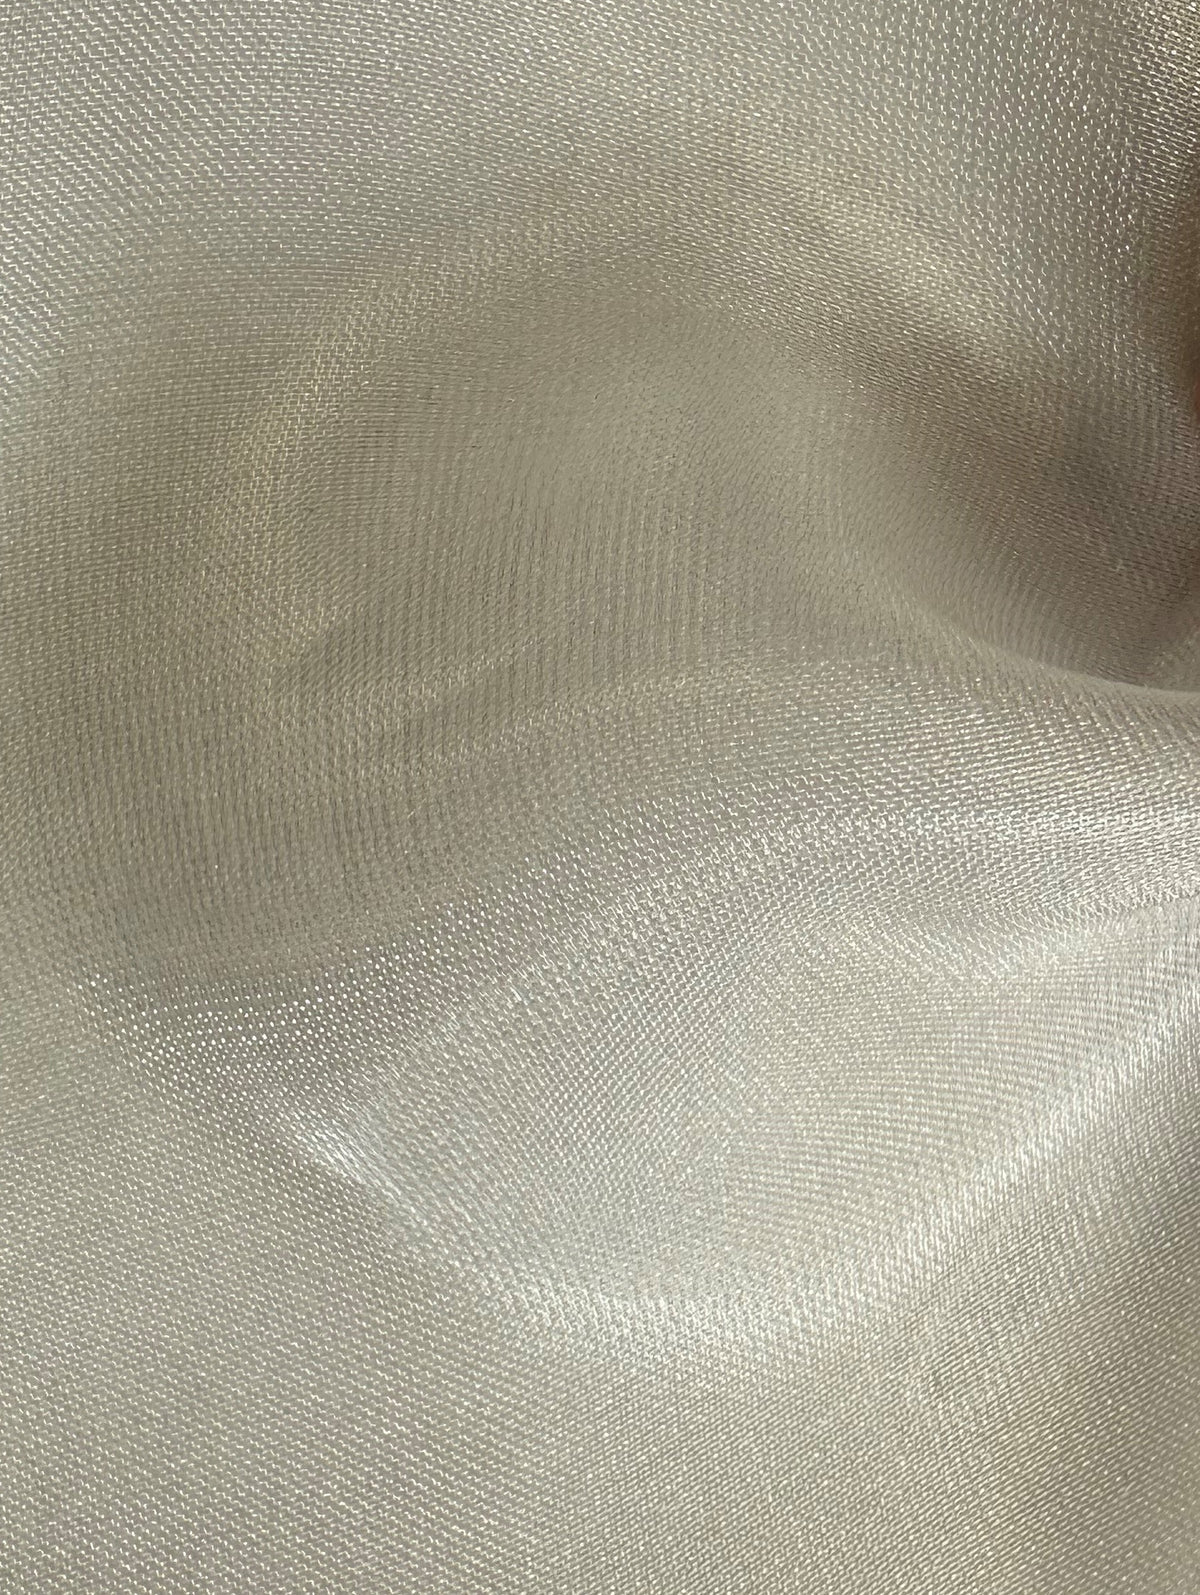 Chiffon lustré en poly/nylon (150cm/59") - Humilité